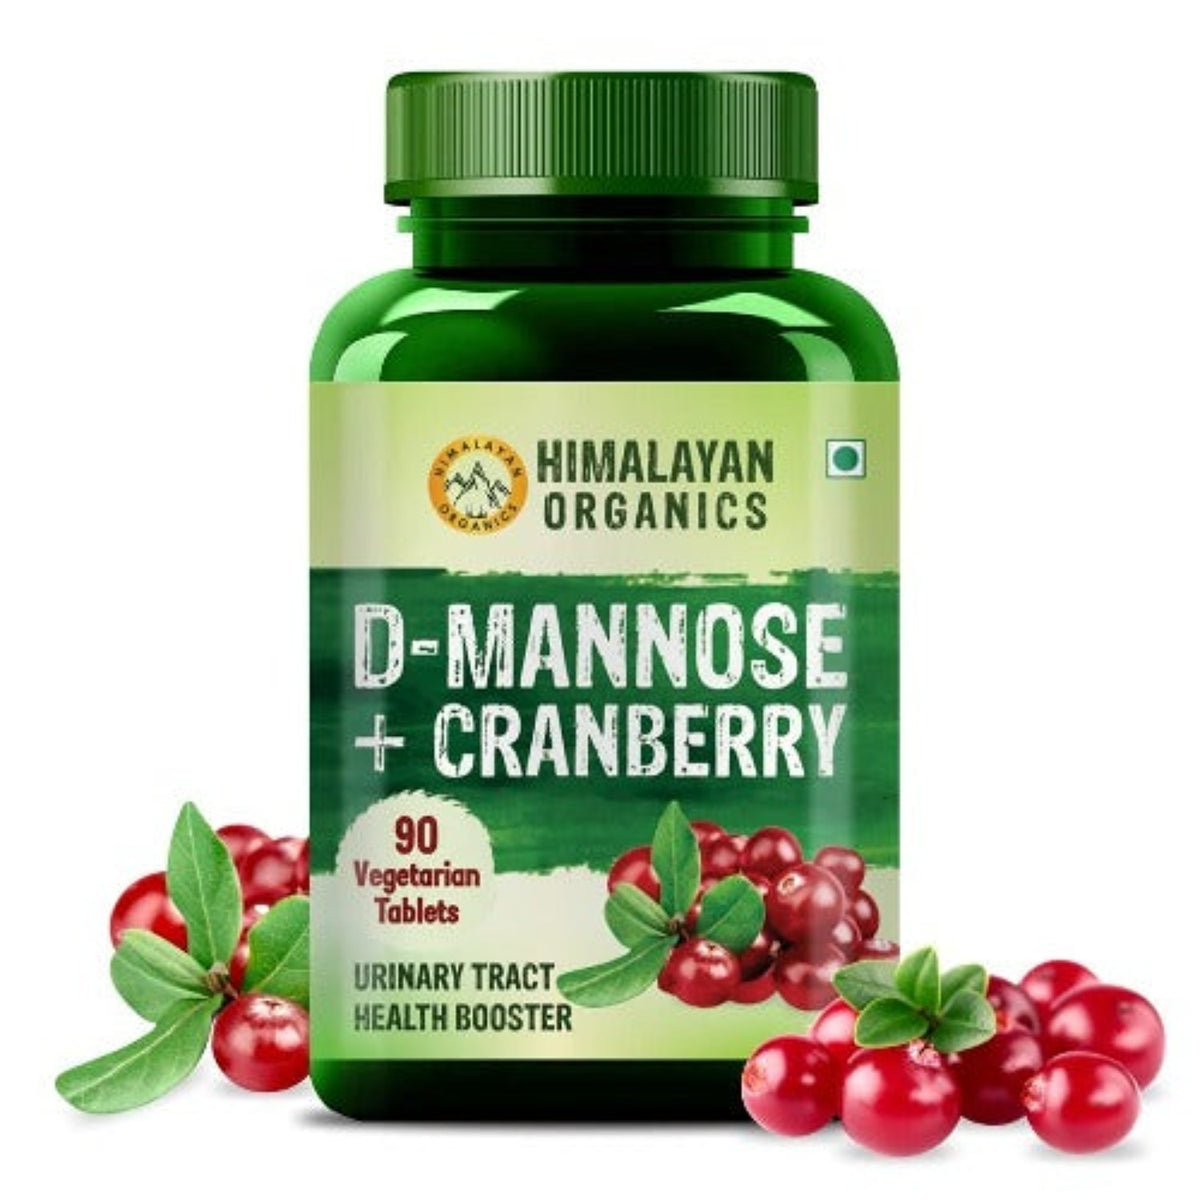 Himalayan Organics D-МАННОЗА + клюква, богатая антиоксидантами добавка для здоровья почек и инфекций мочевыводящих путей, 90 таблеток